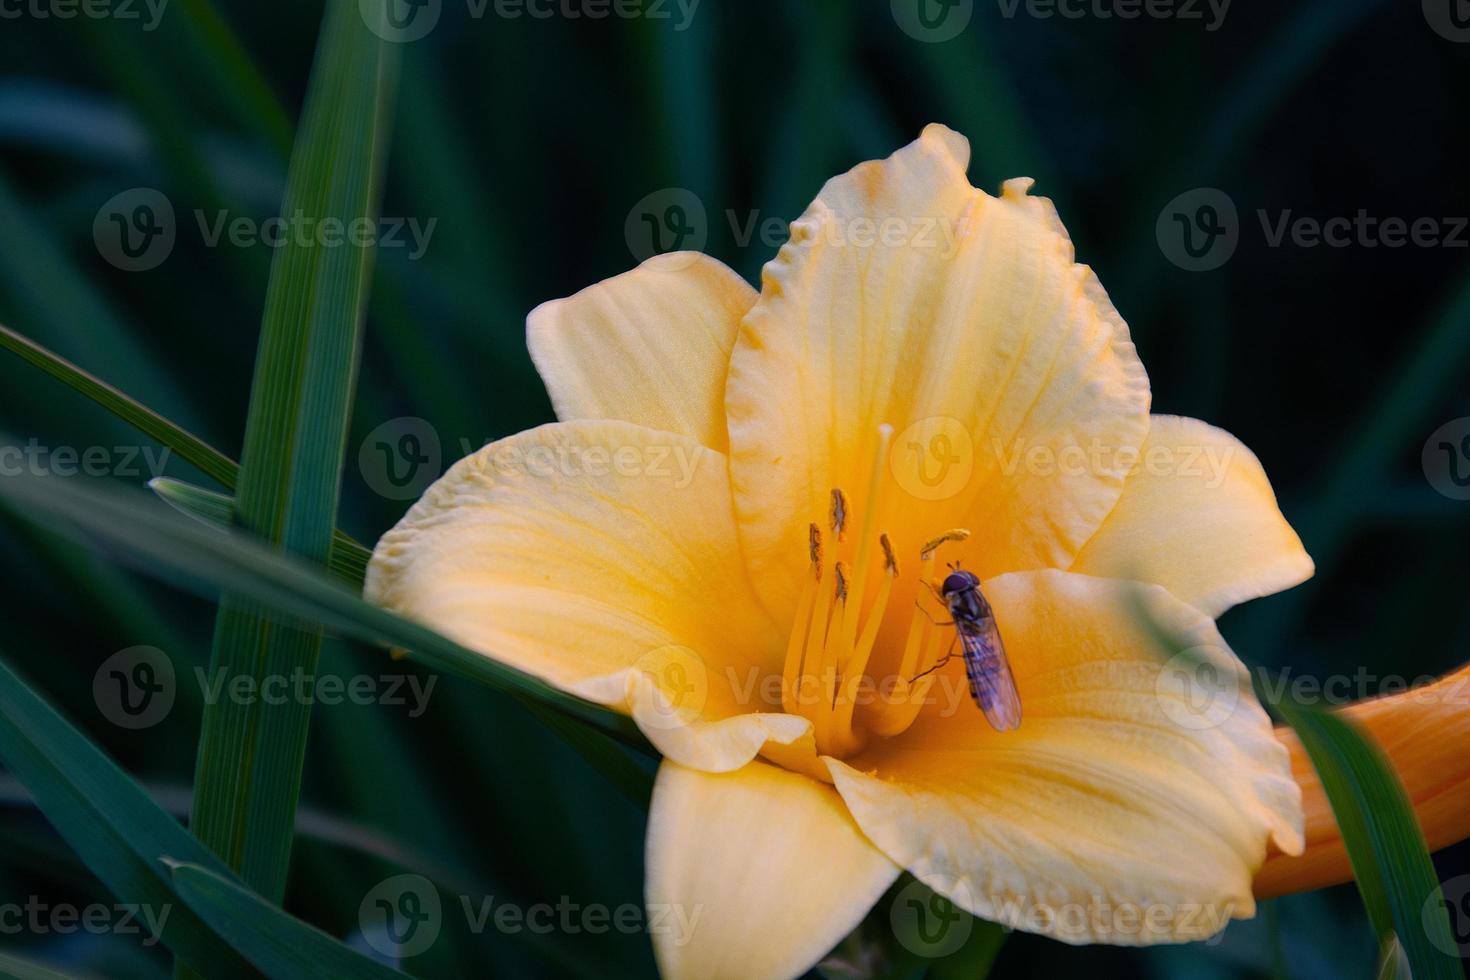 vespa em uma flor amarela na grama verde foto